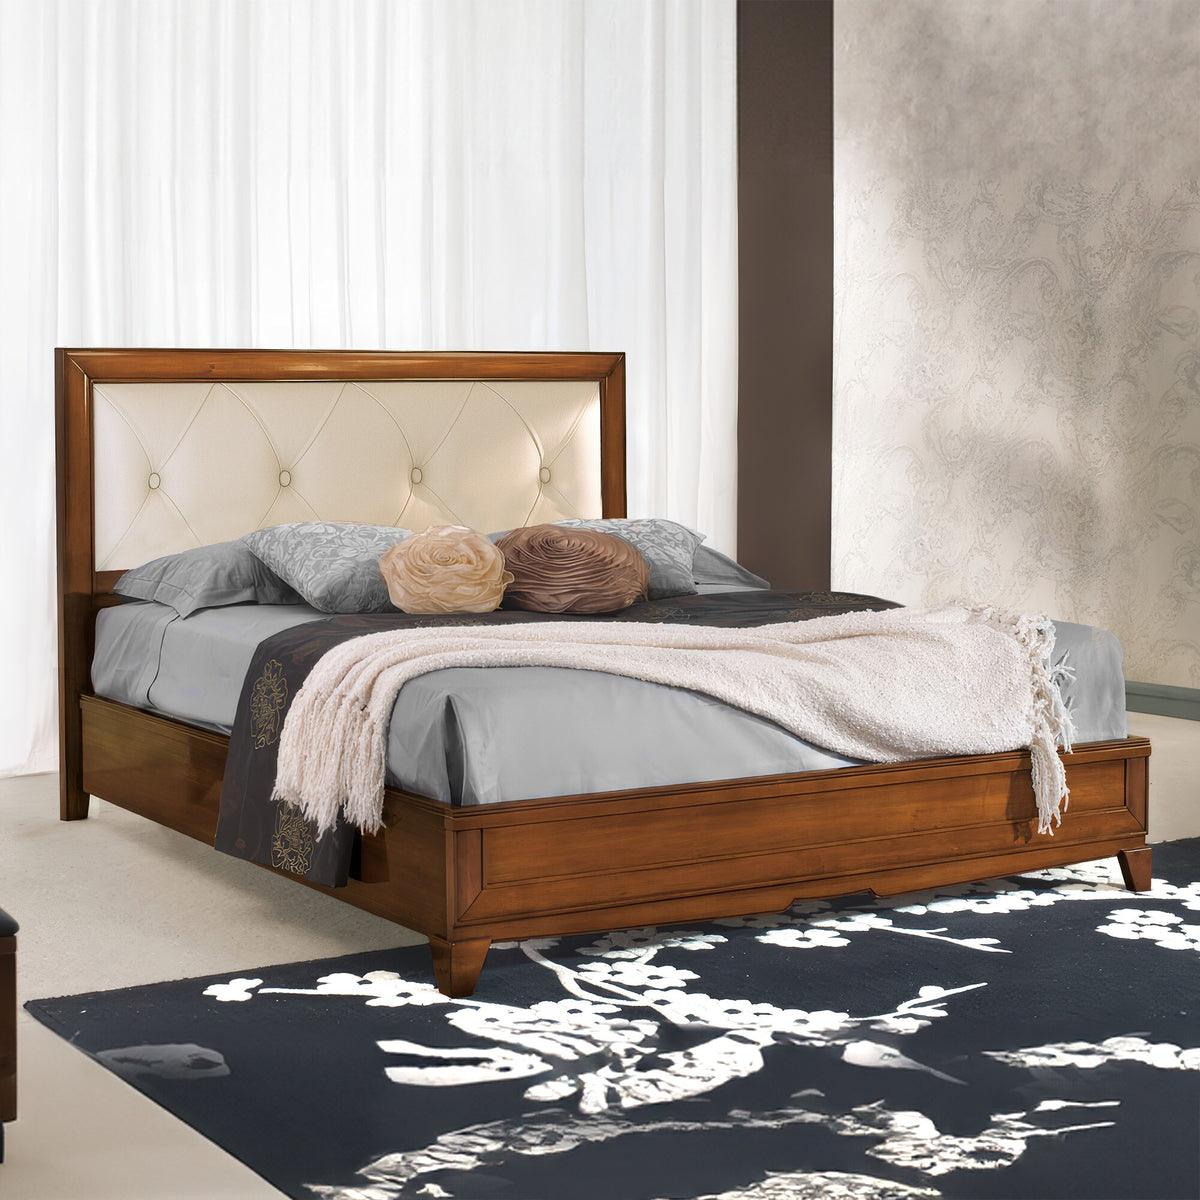 Классическая двуспальная кровать из дерева и кожи с ящиком для хранения W 174 D 206 см Collezione Arte D'Este Piombini